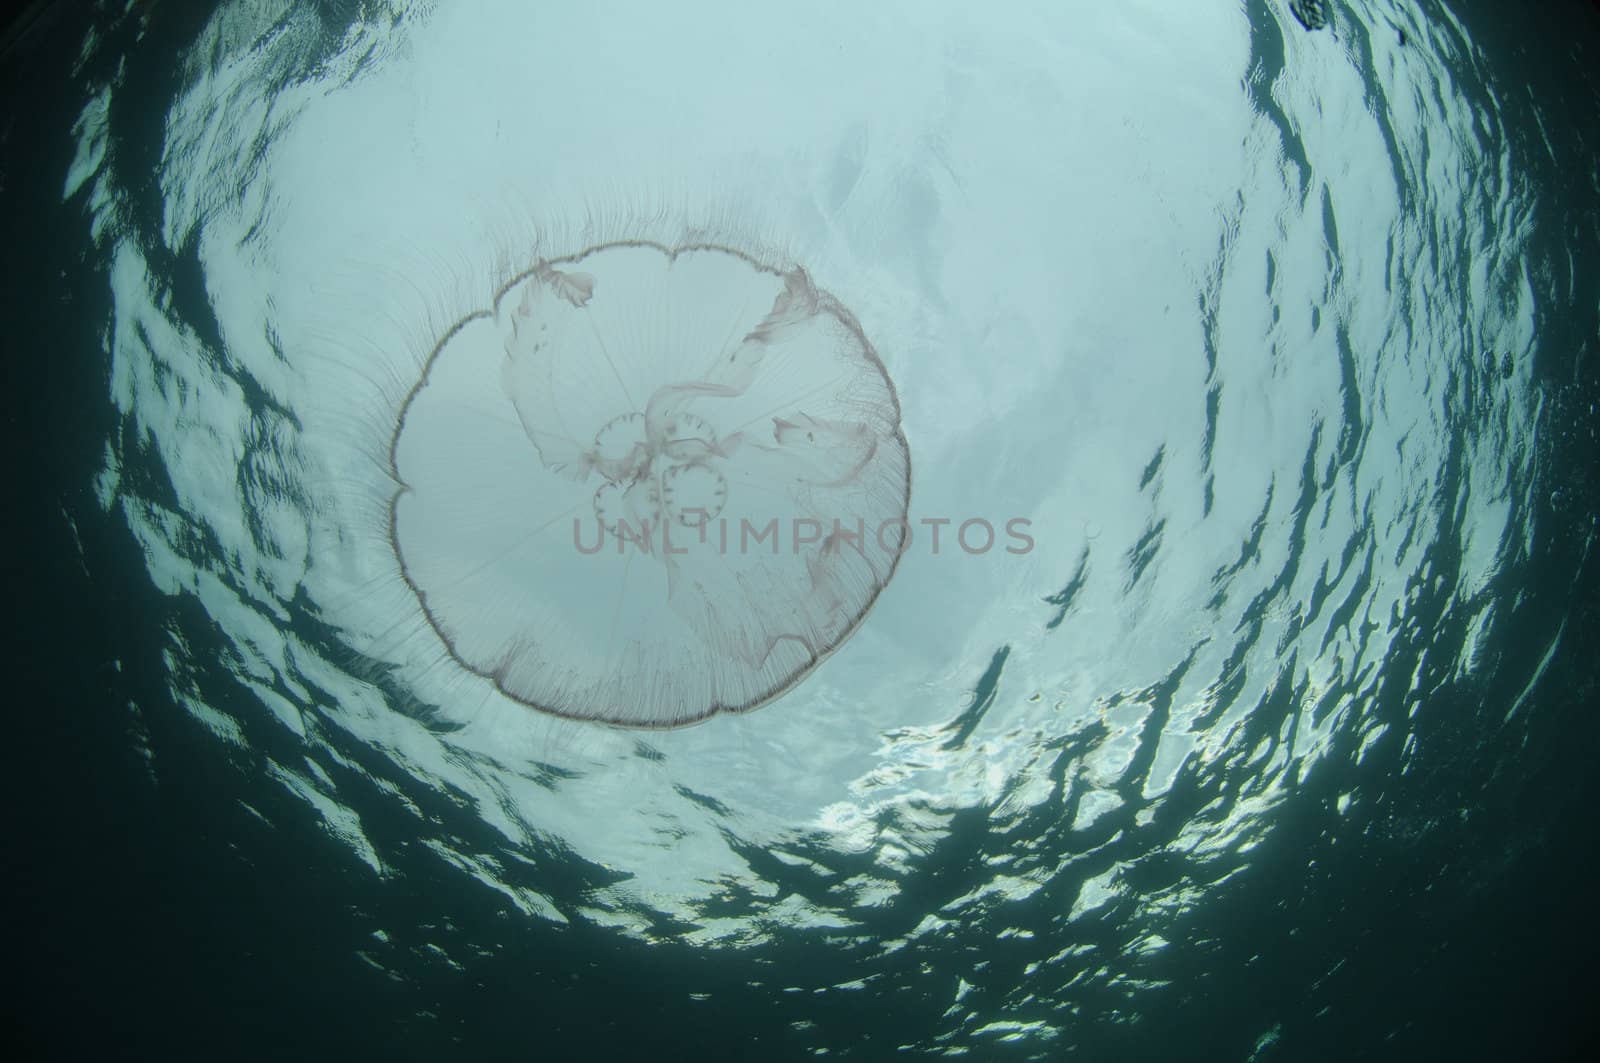 Jellyfish swimming underwater in ocean by ftlaudgirl